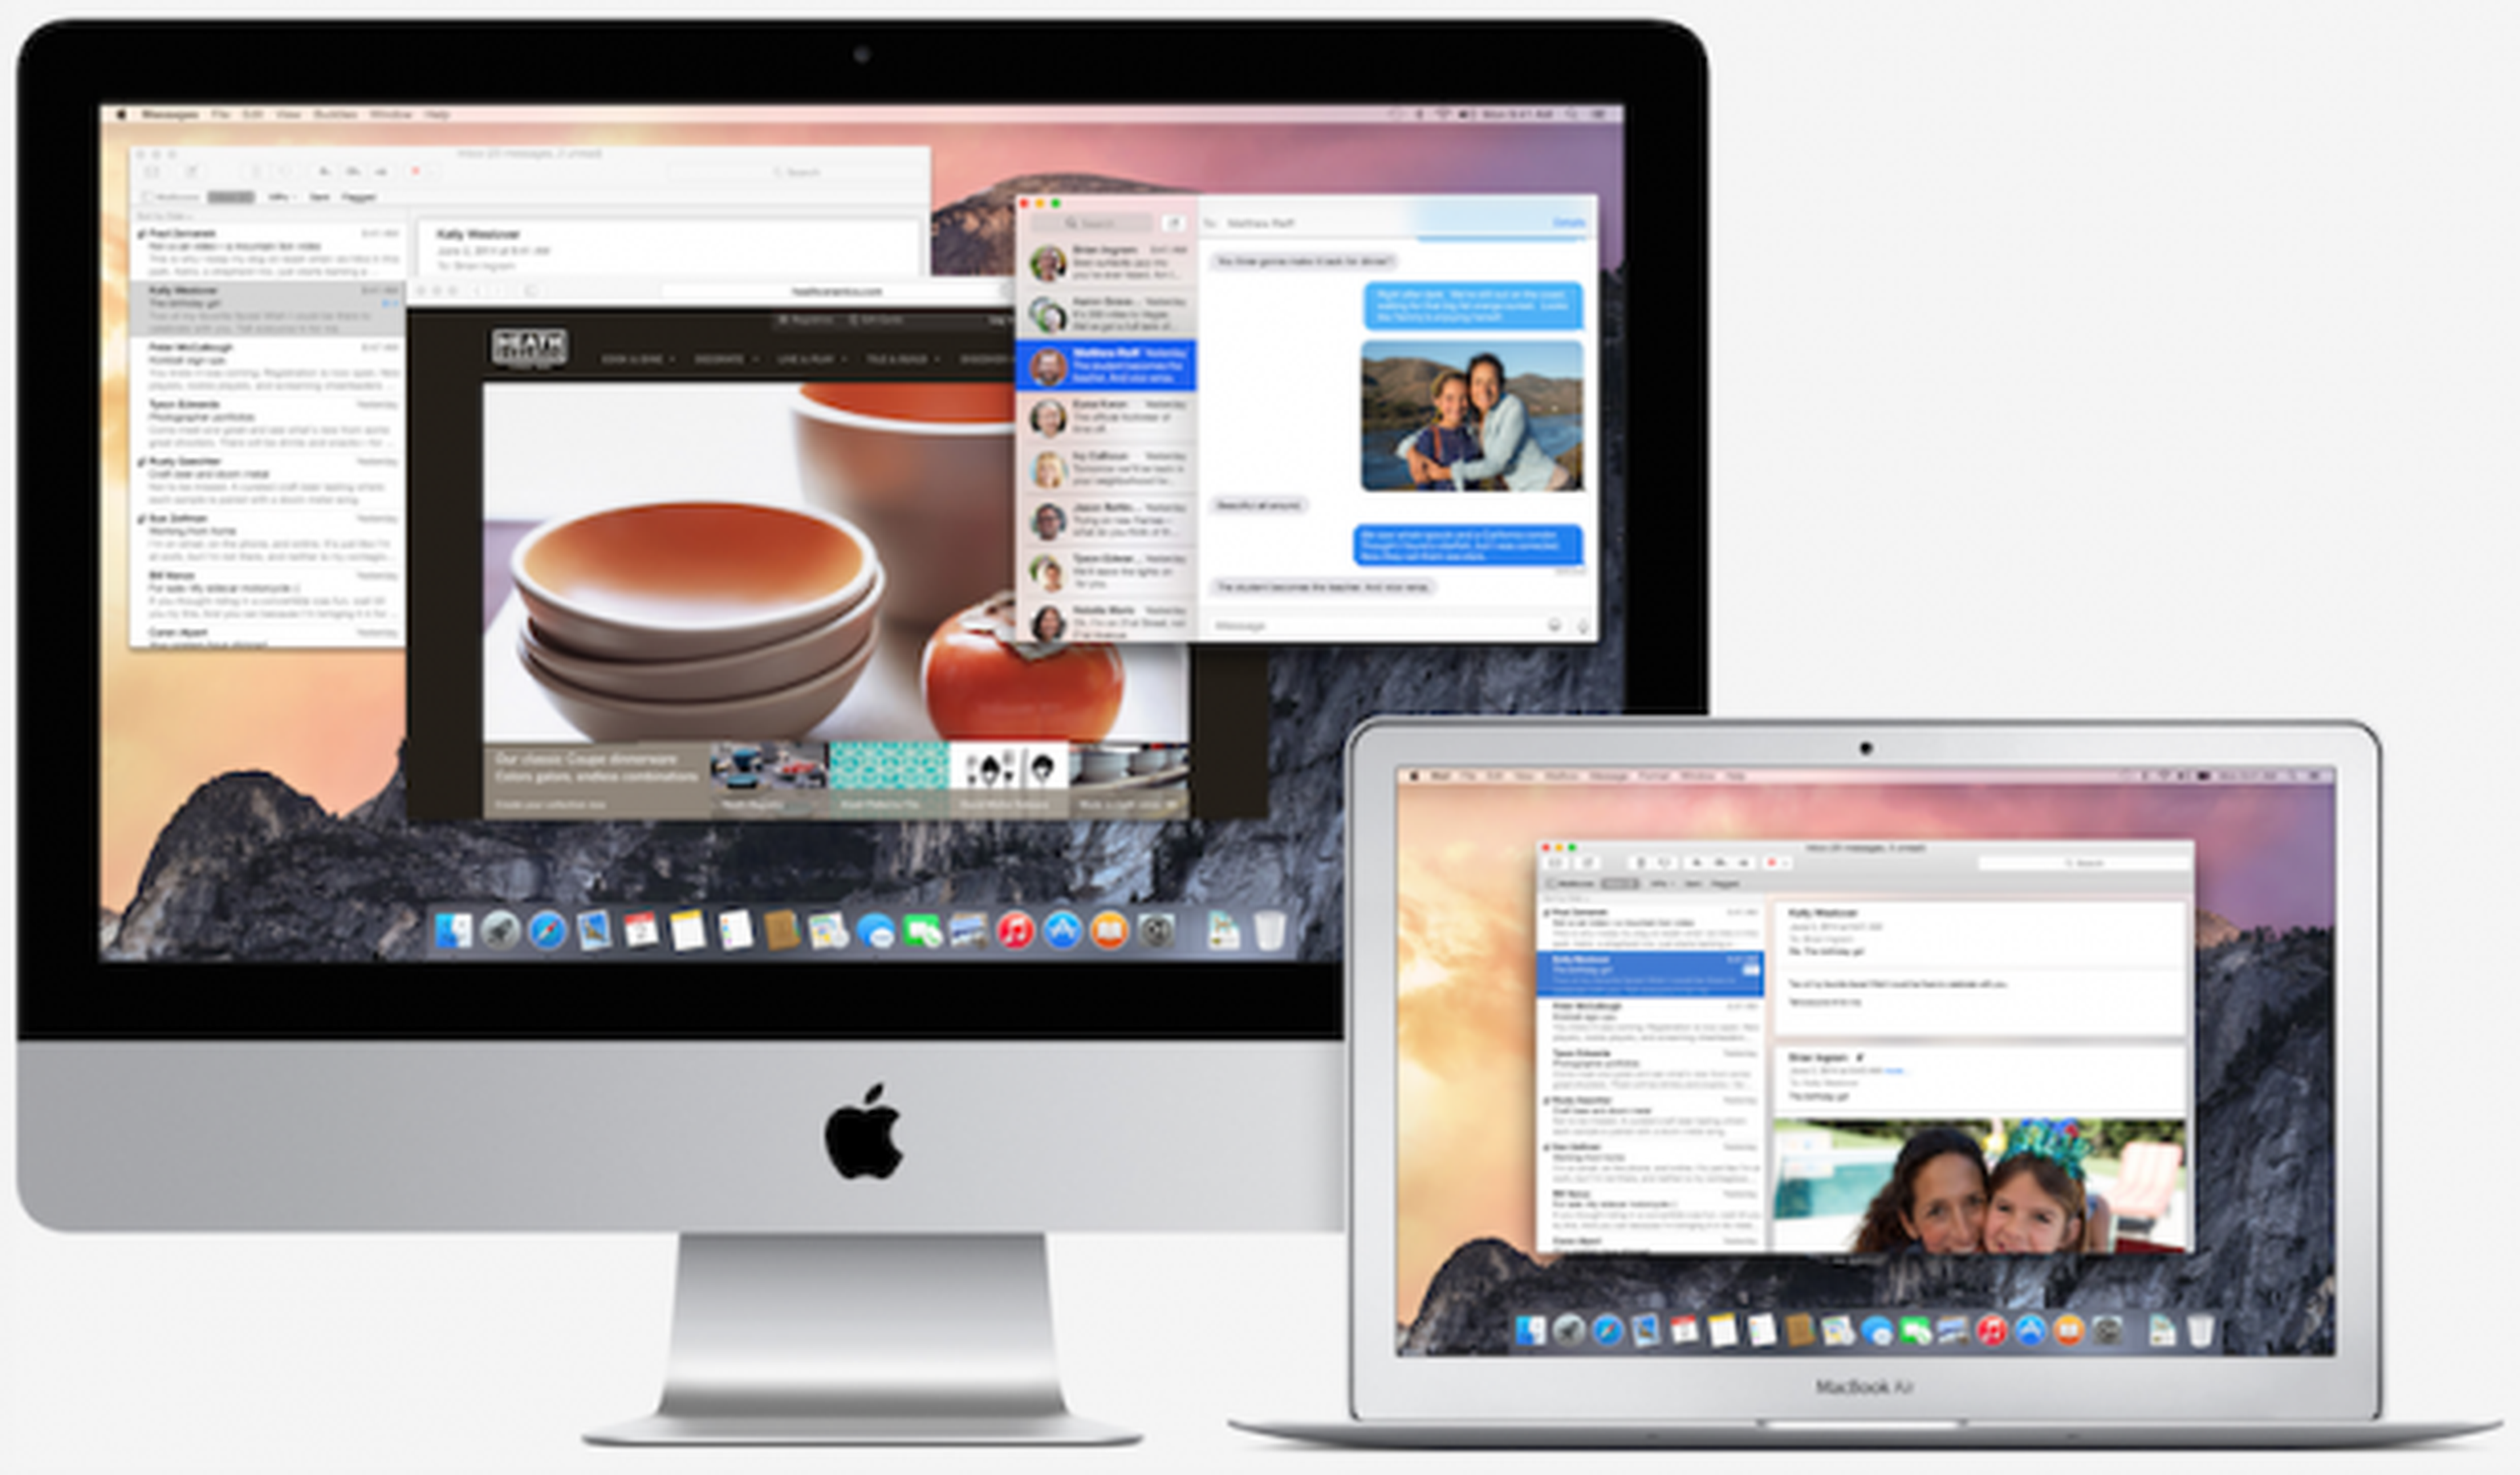 Nuevos Macbooks y iMac con OS X Yosemite